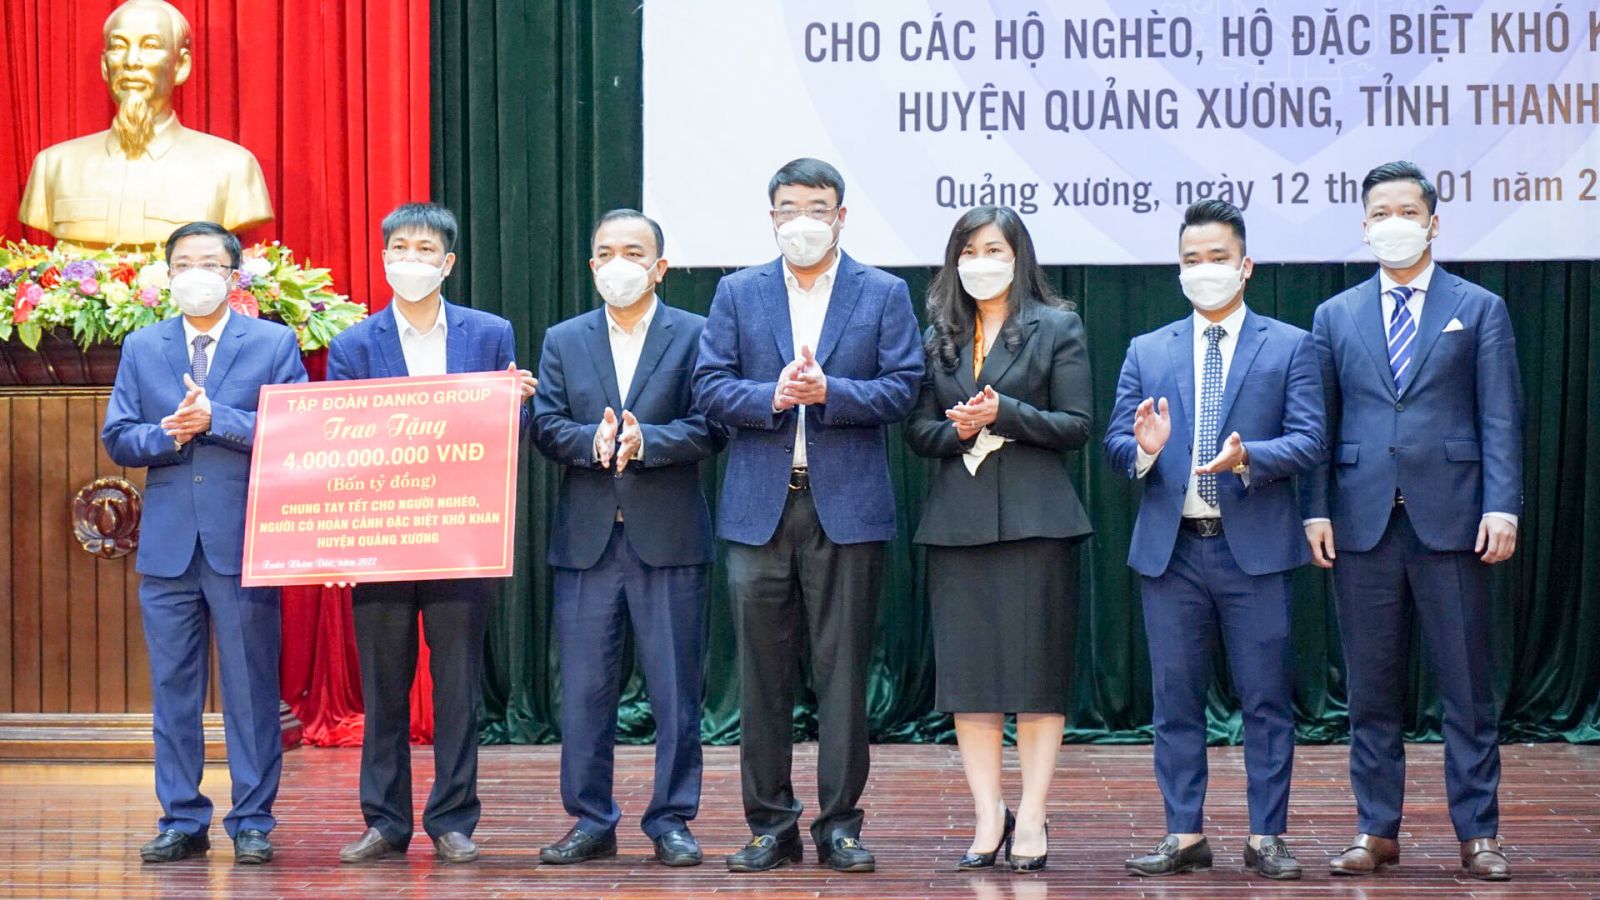 Trao tặng hơn 4 tỷ đồng quà Tết cho các hộ dân trên địa bàn huyện Quảng Xương, tỉnh Thanh Hóa